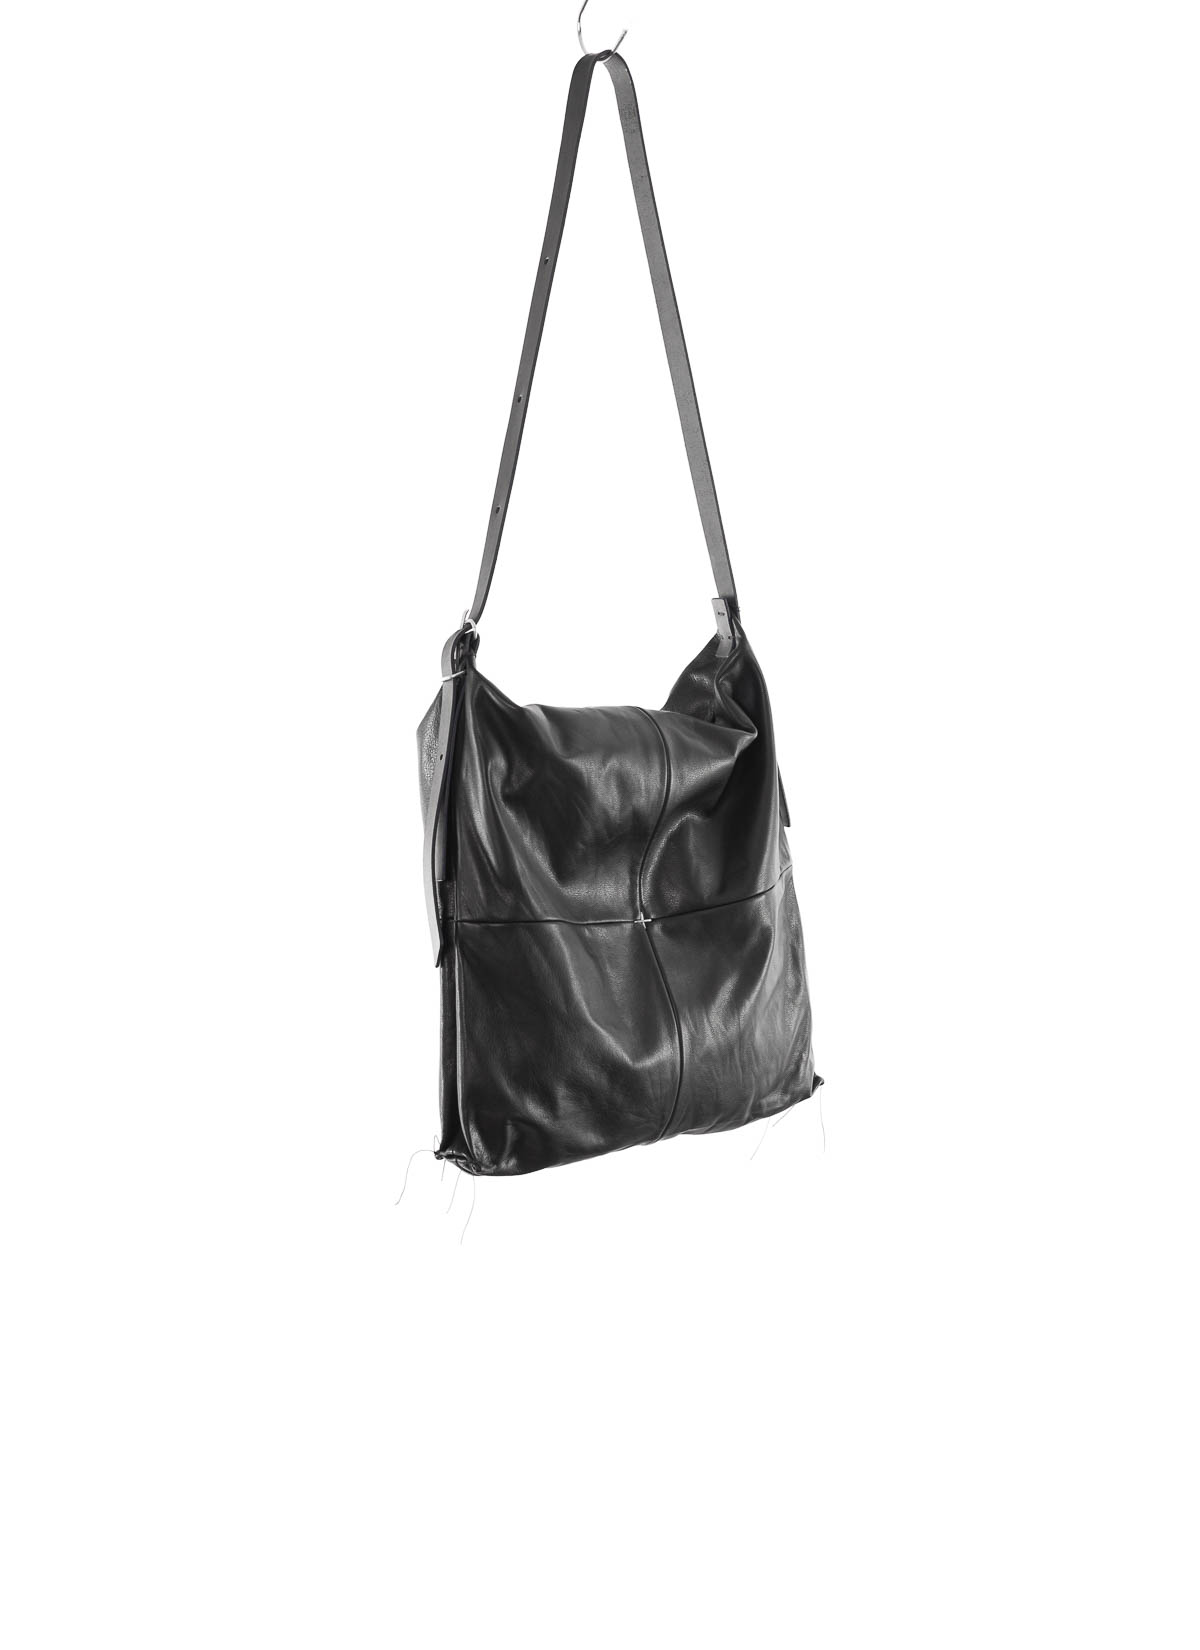 Women's Designer Handbags Tote Bag by taiche